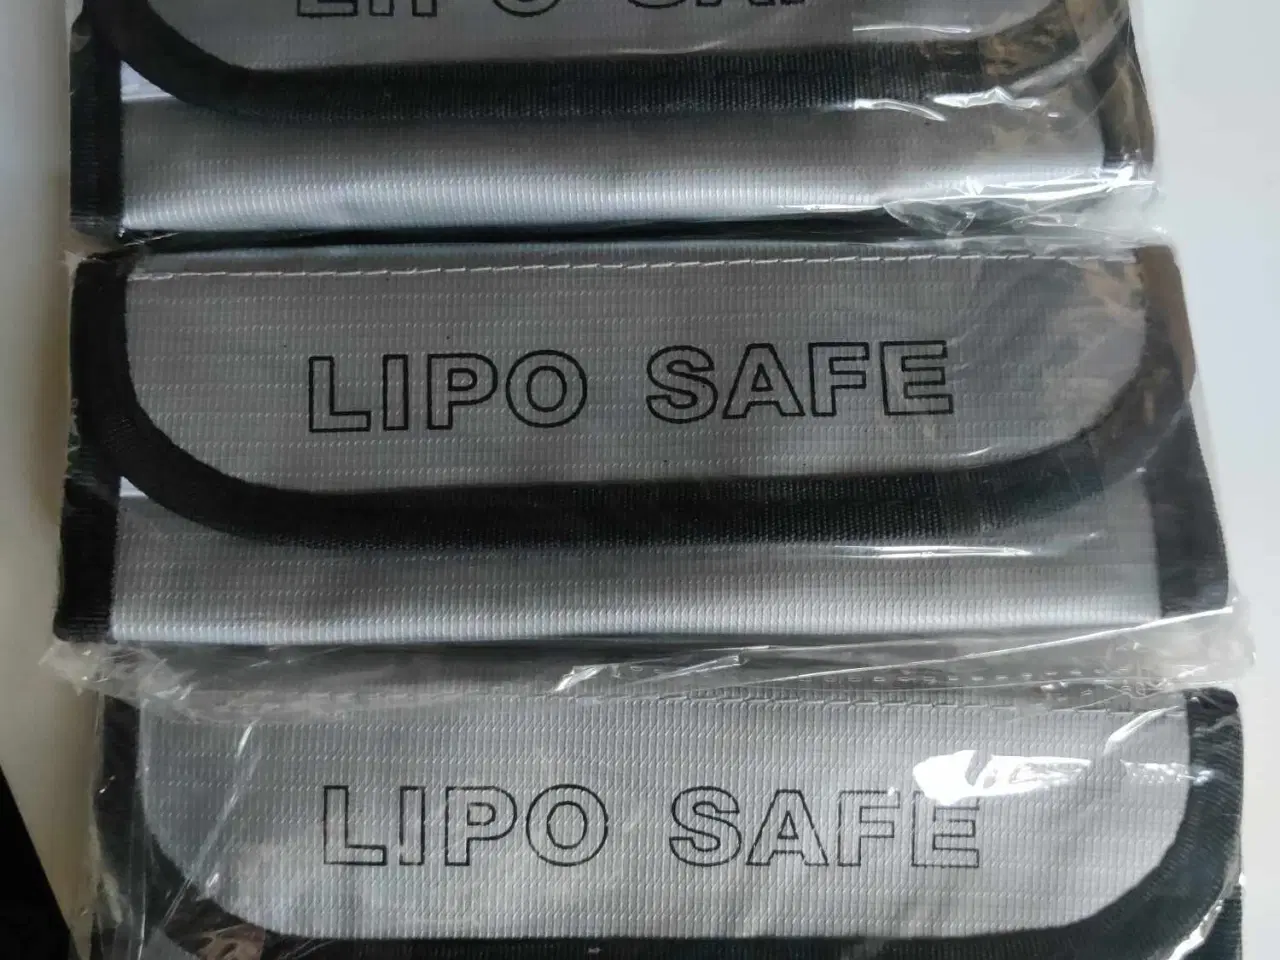 Billede 1 - LiPo safe beholder, bransikker.